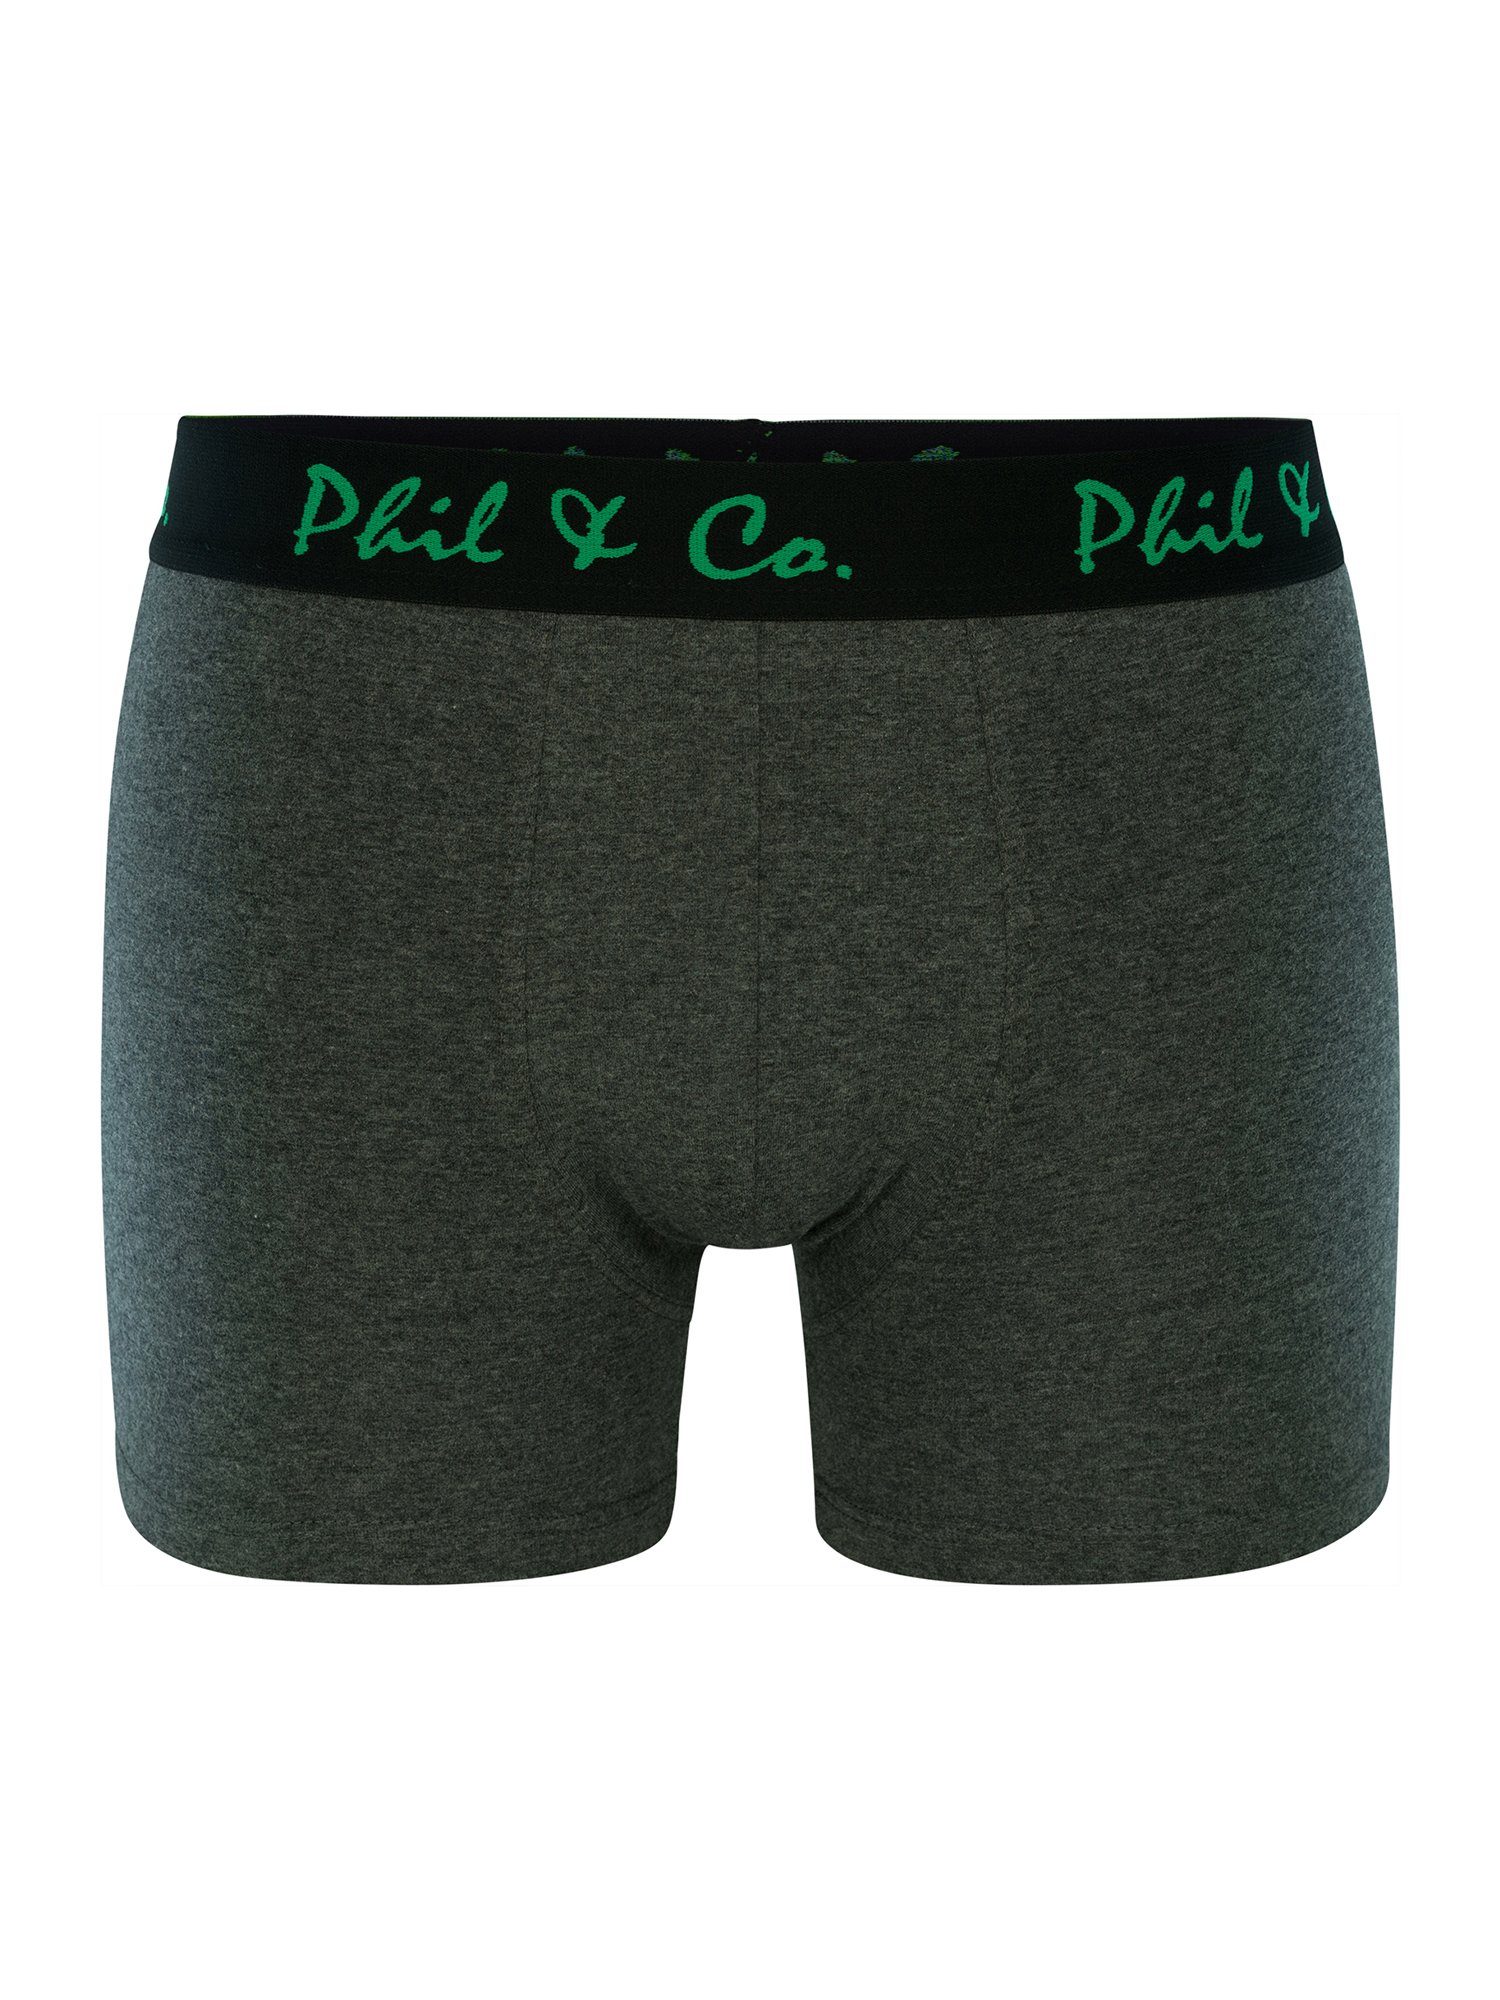 (6-St) Phil Co. Pants & grün-anthrazit Jersey Retro